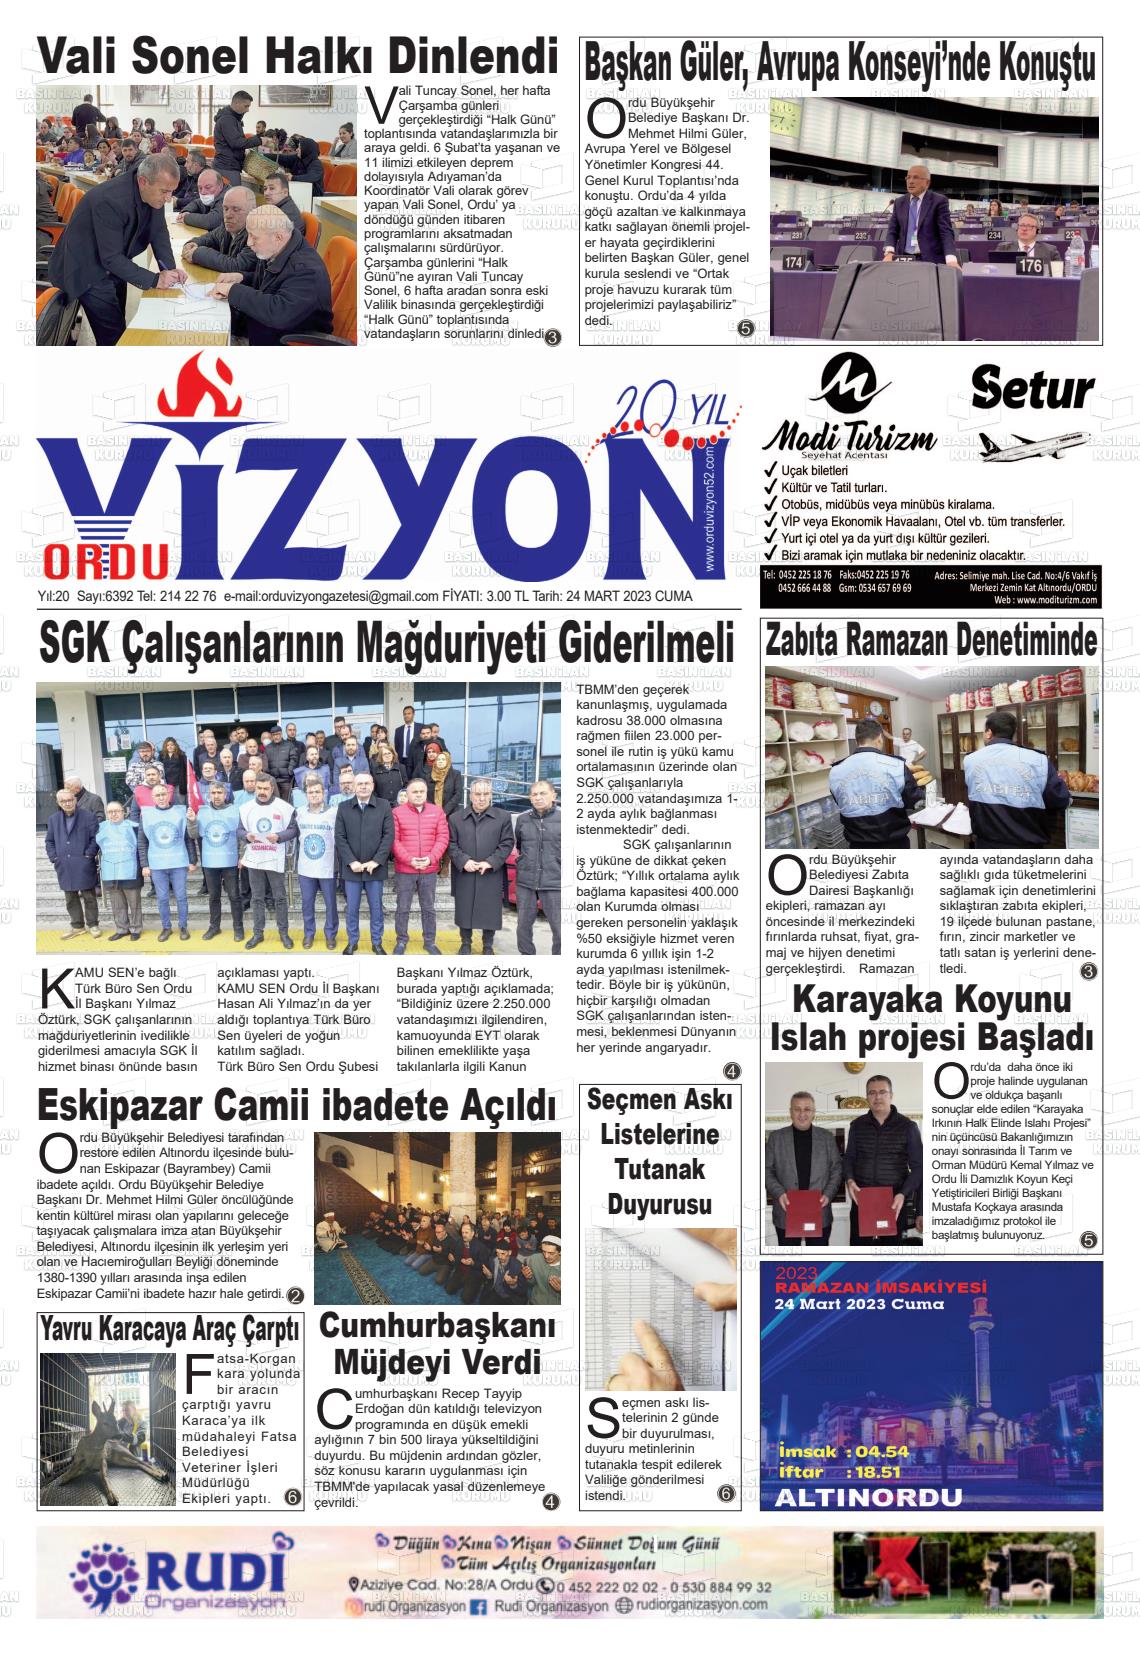 24 Mart 2023 Ordu Vizyon Gazete Manşeti